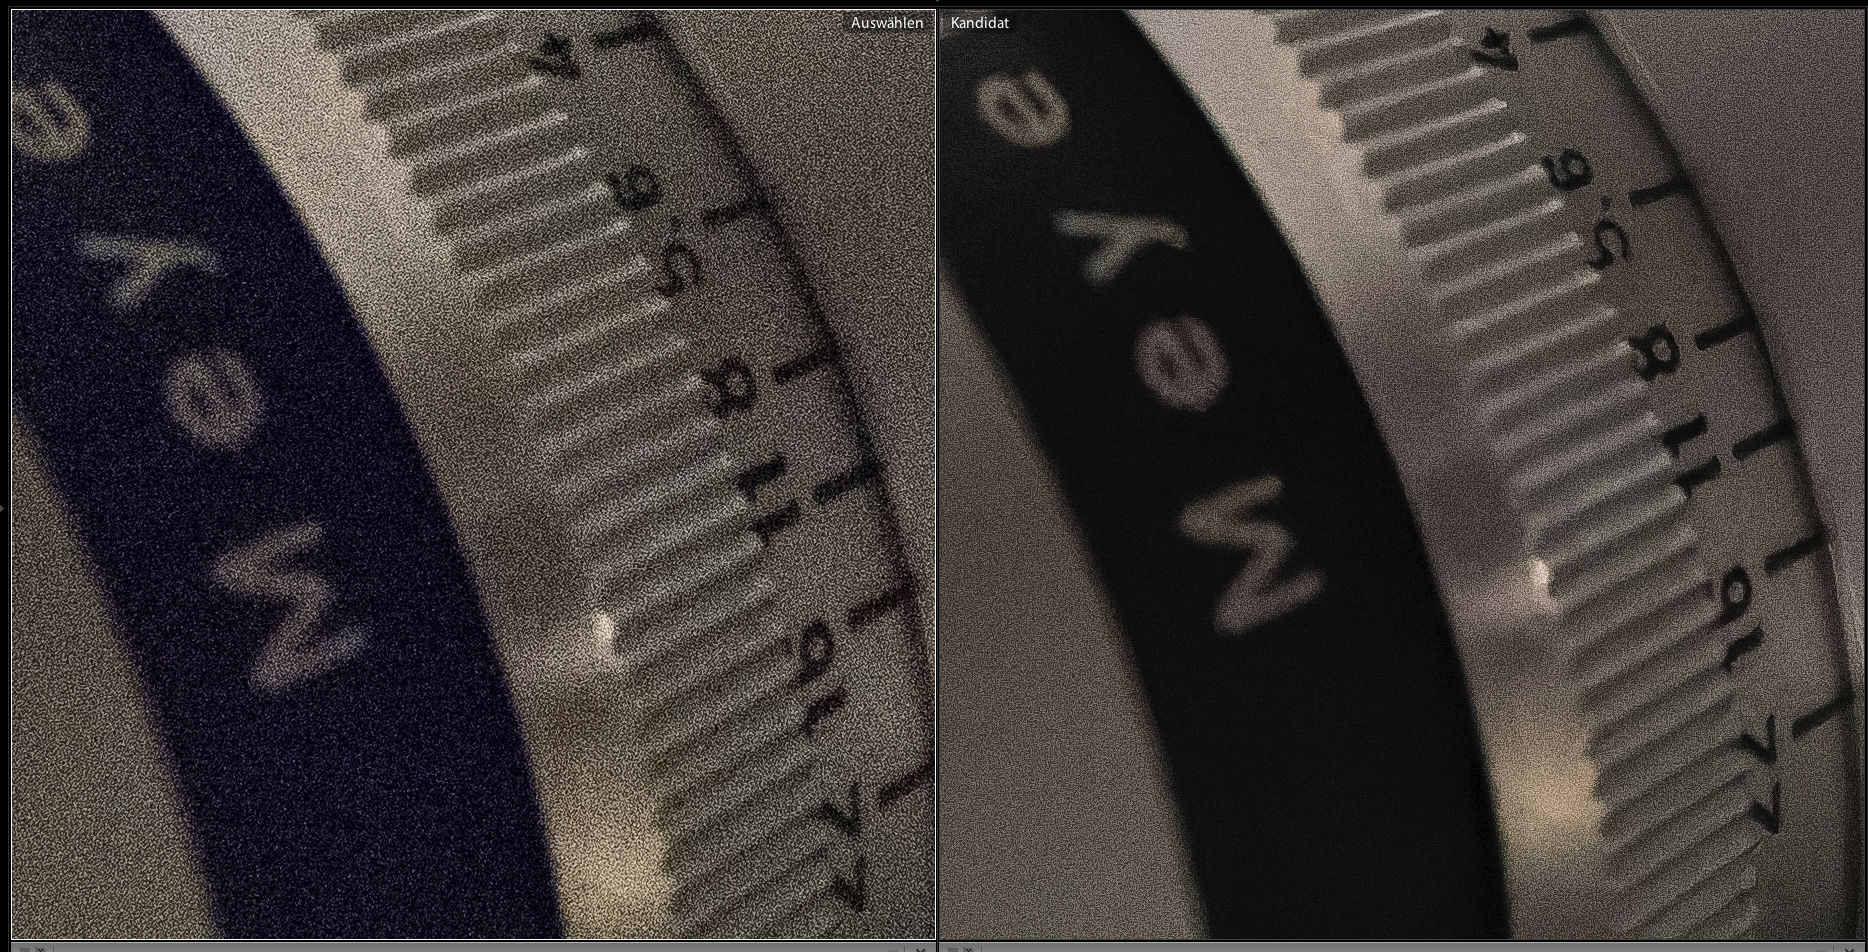 Detail der SpiegelReflexKamera, sehr grobes vs. sehr feines Rauschen im Vergleich